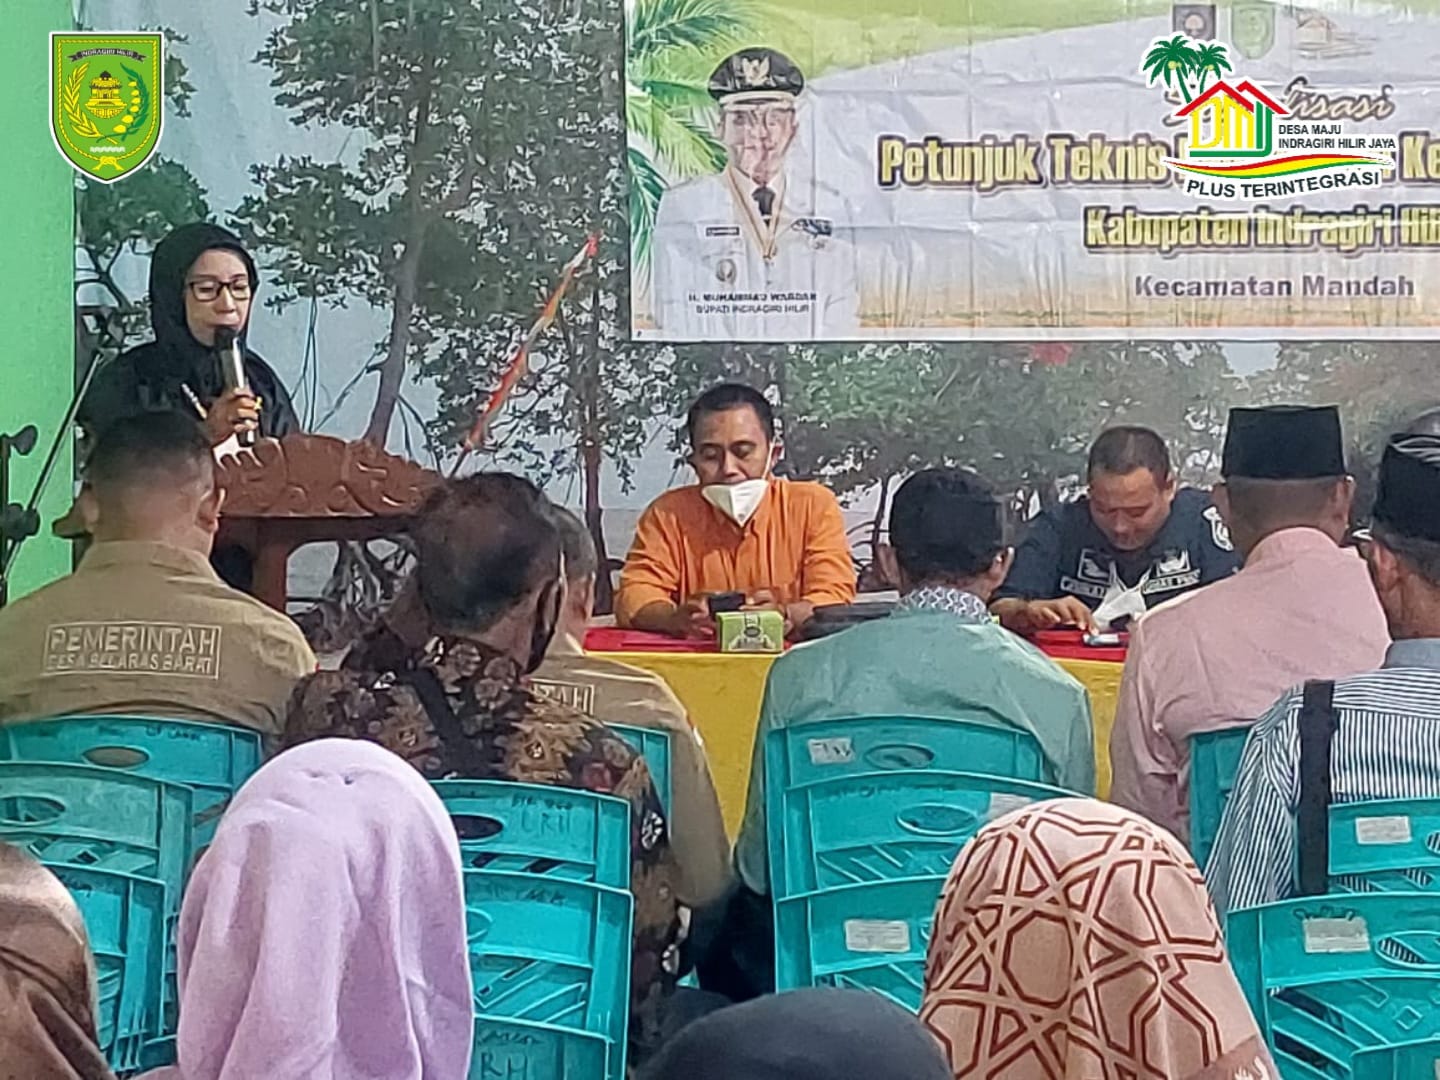 DMIJ Plus Terintegrasi: Siap Menginplementasikan Permendagri No 20 Tahun 2018, DPMD Inhil Gelar Sosialisasi PTOPKD ke 16 Desa se-kecamatan Mandah